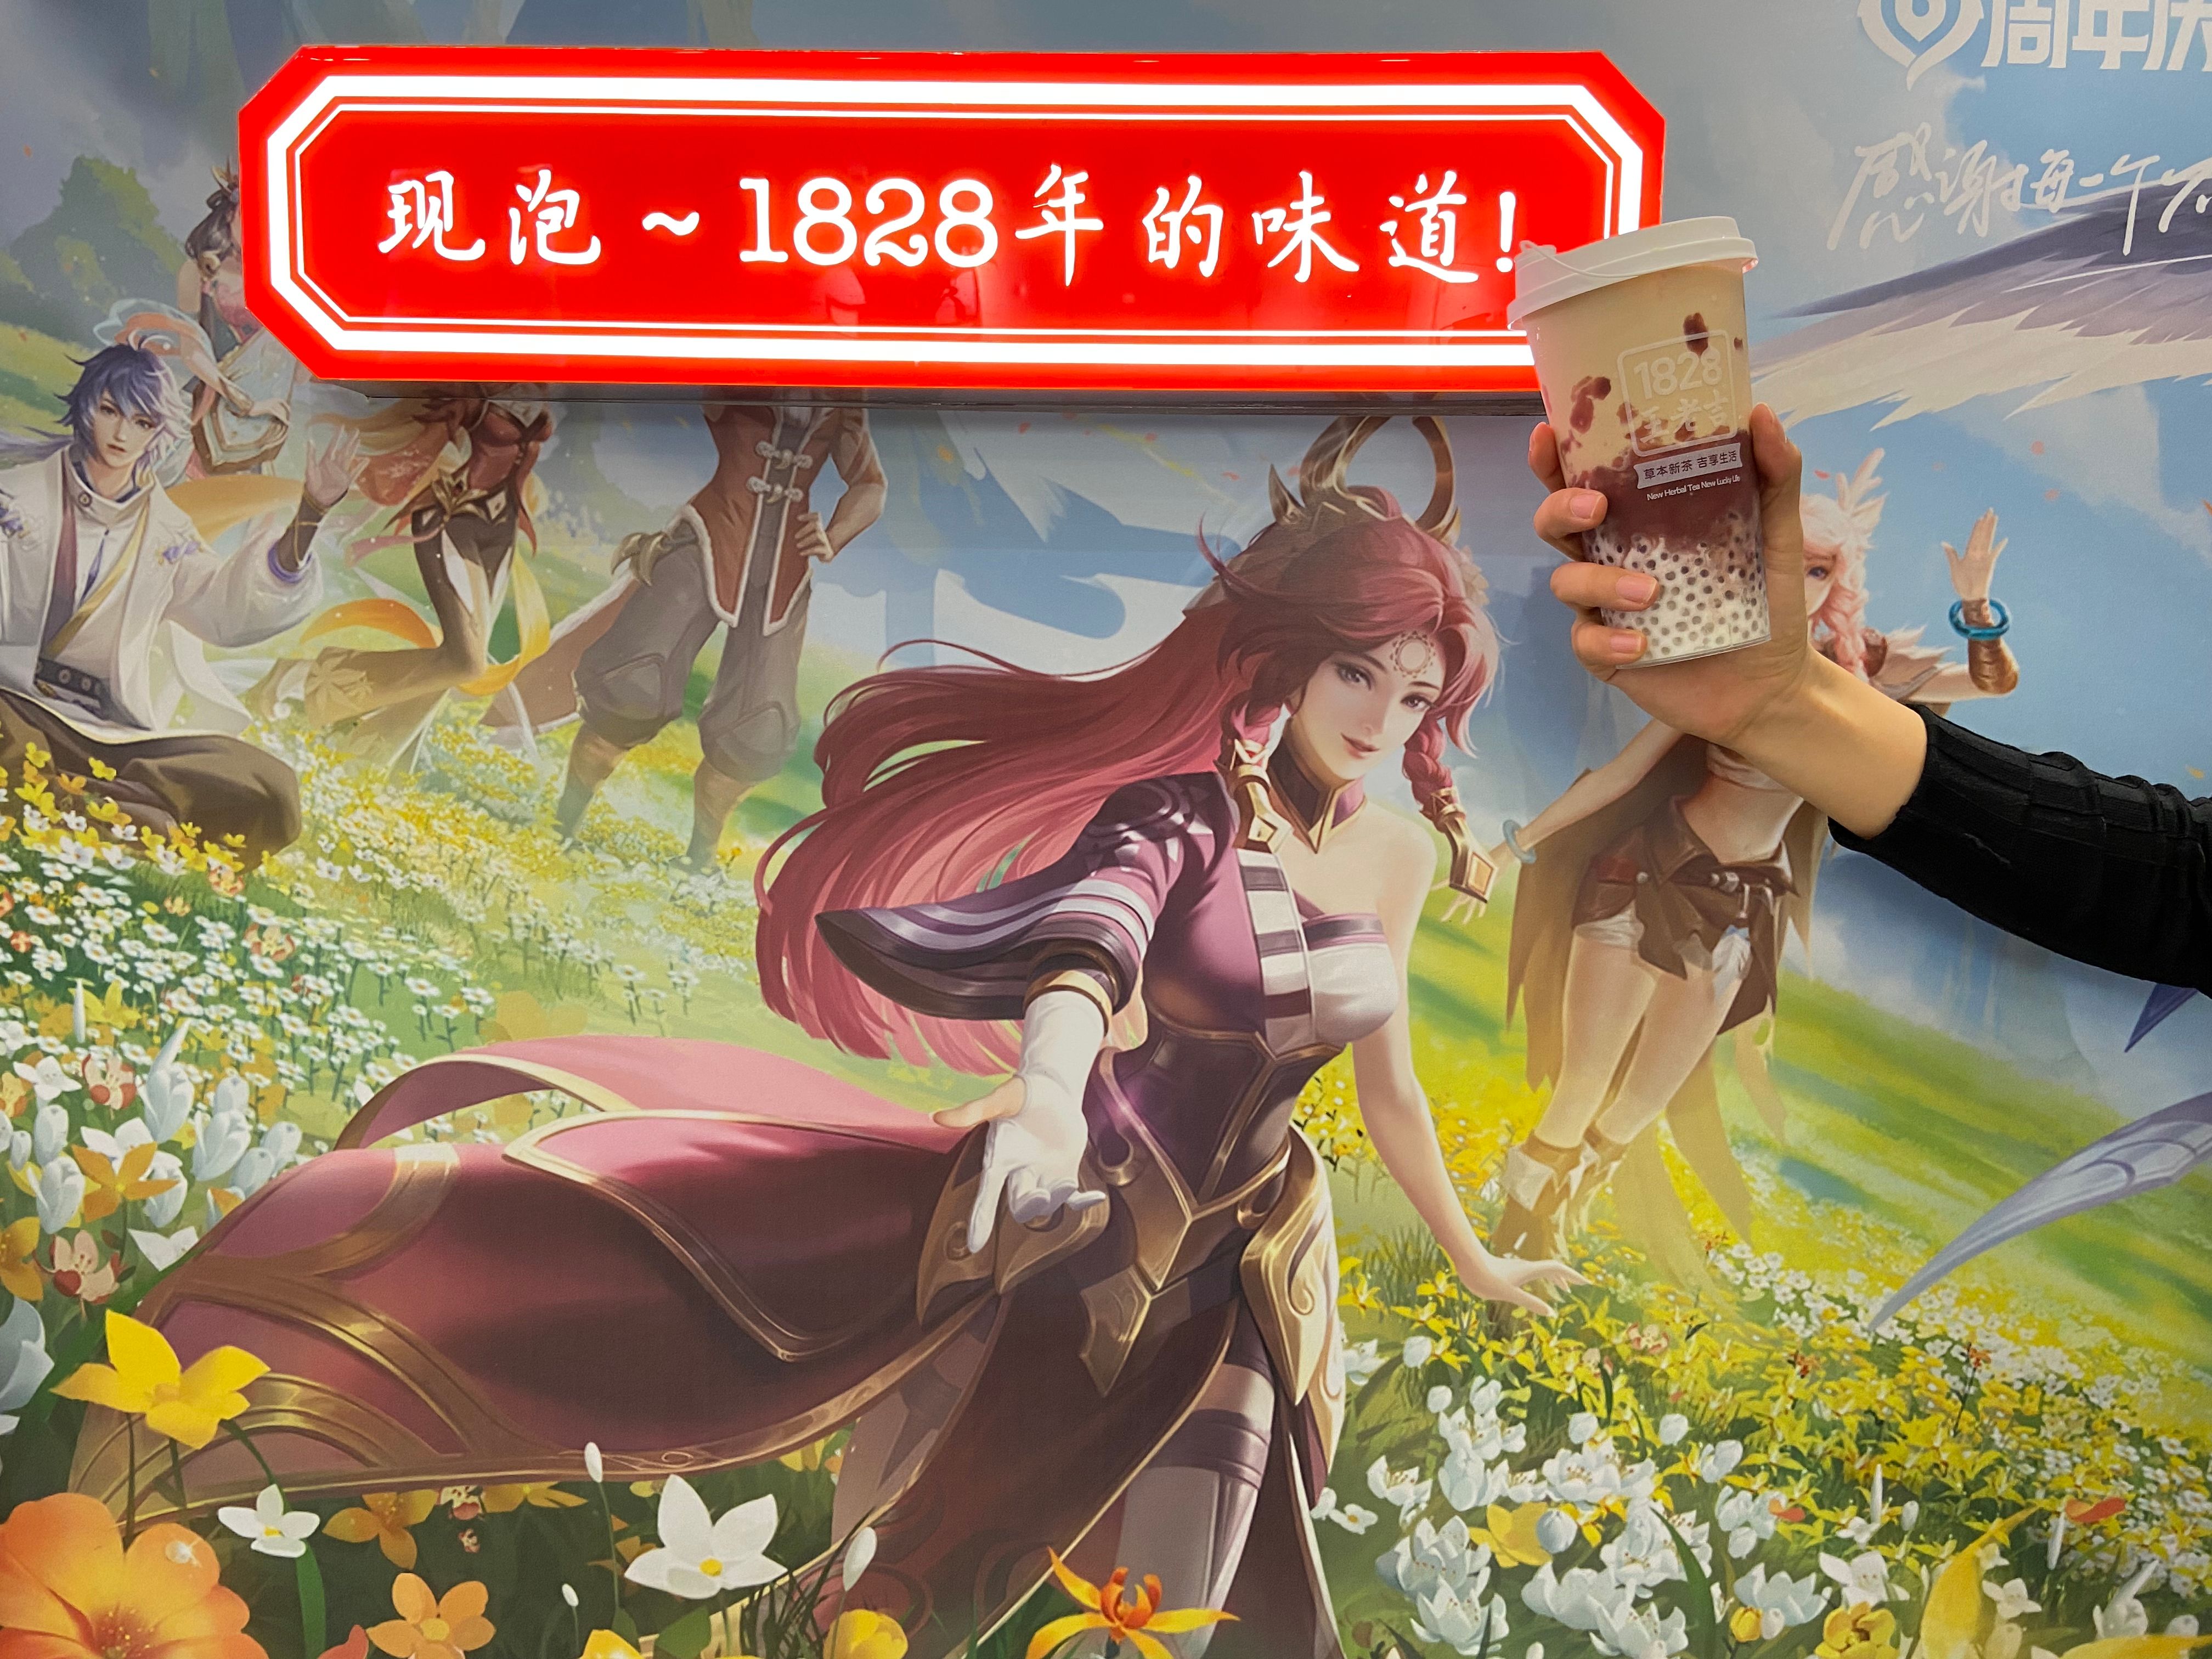 1828王老吉联手王者荣耀 创造年轻人潮流饮茶方式